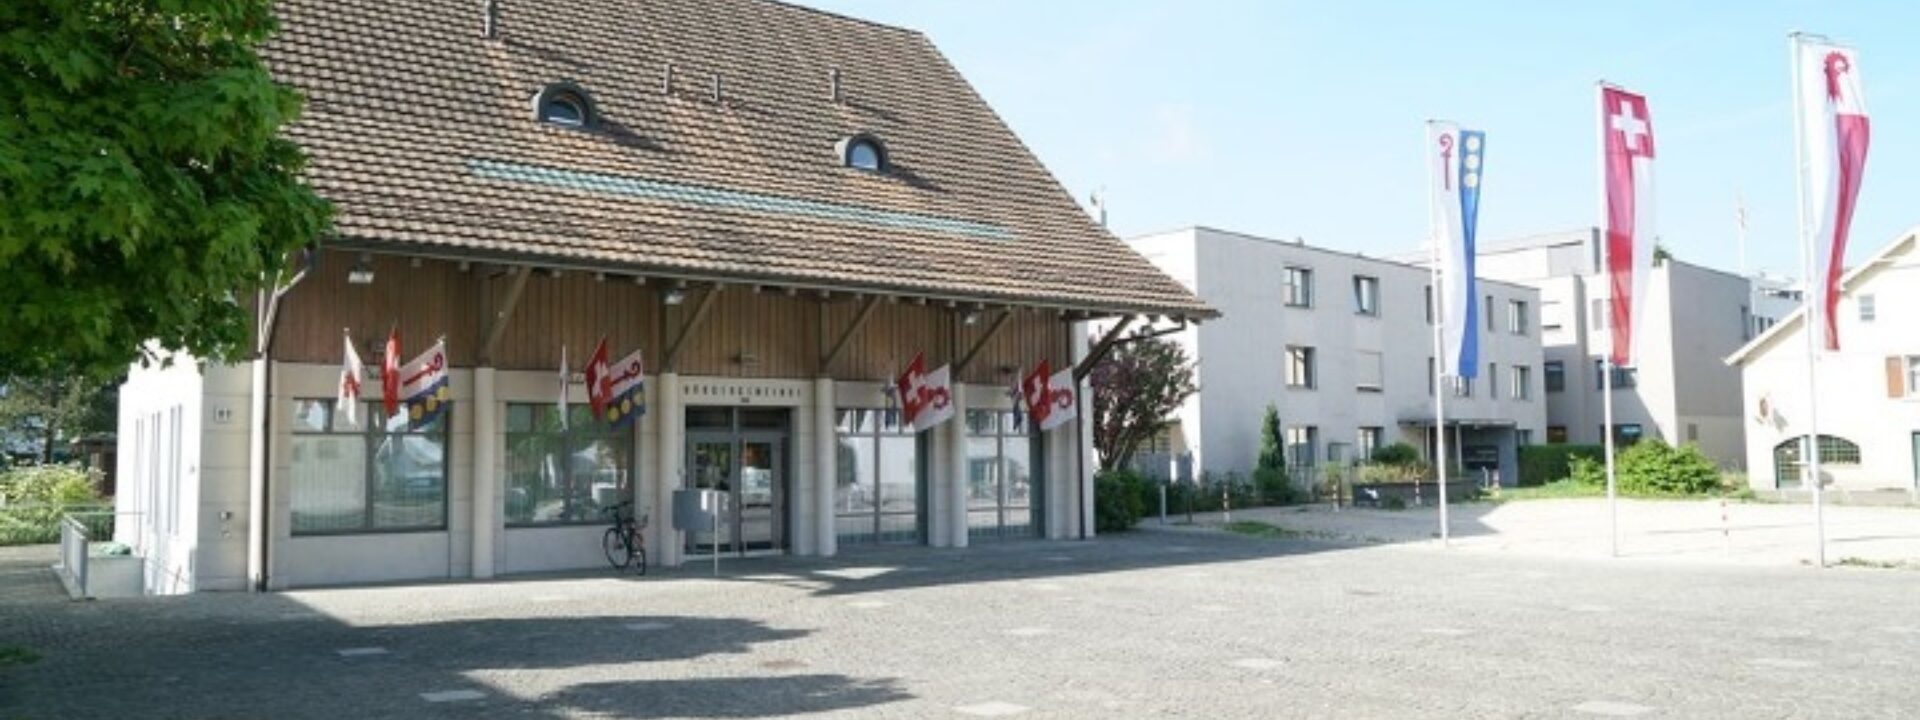 Bürgersaal Reinach